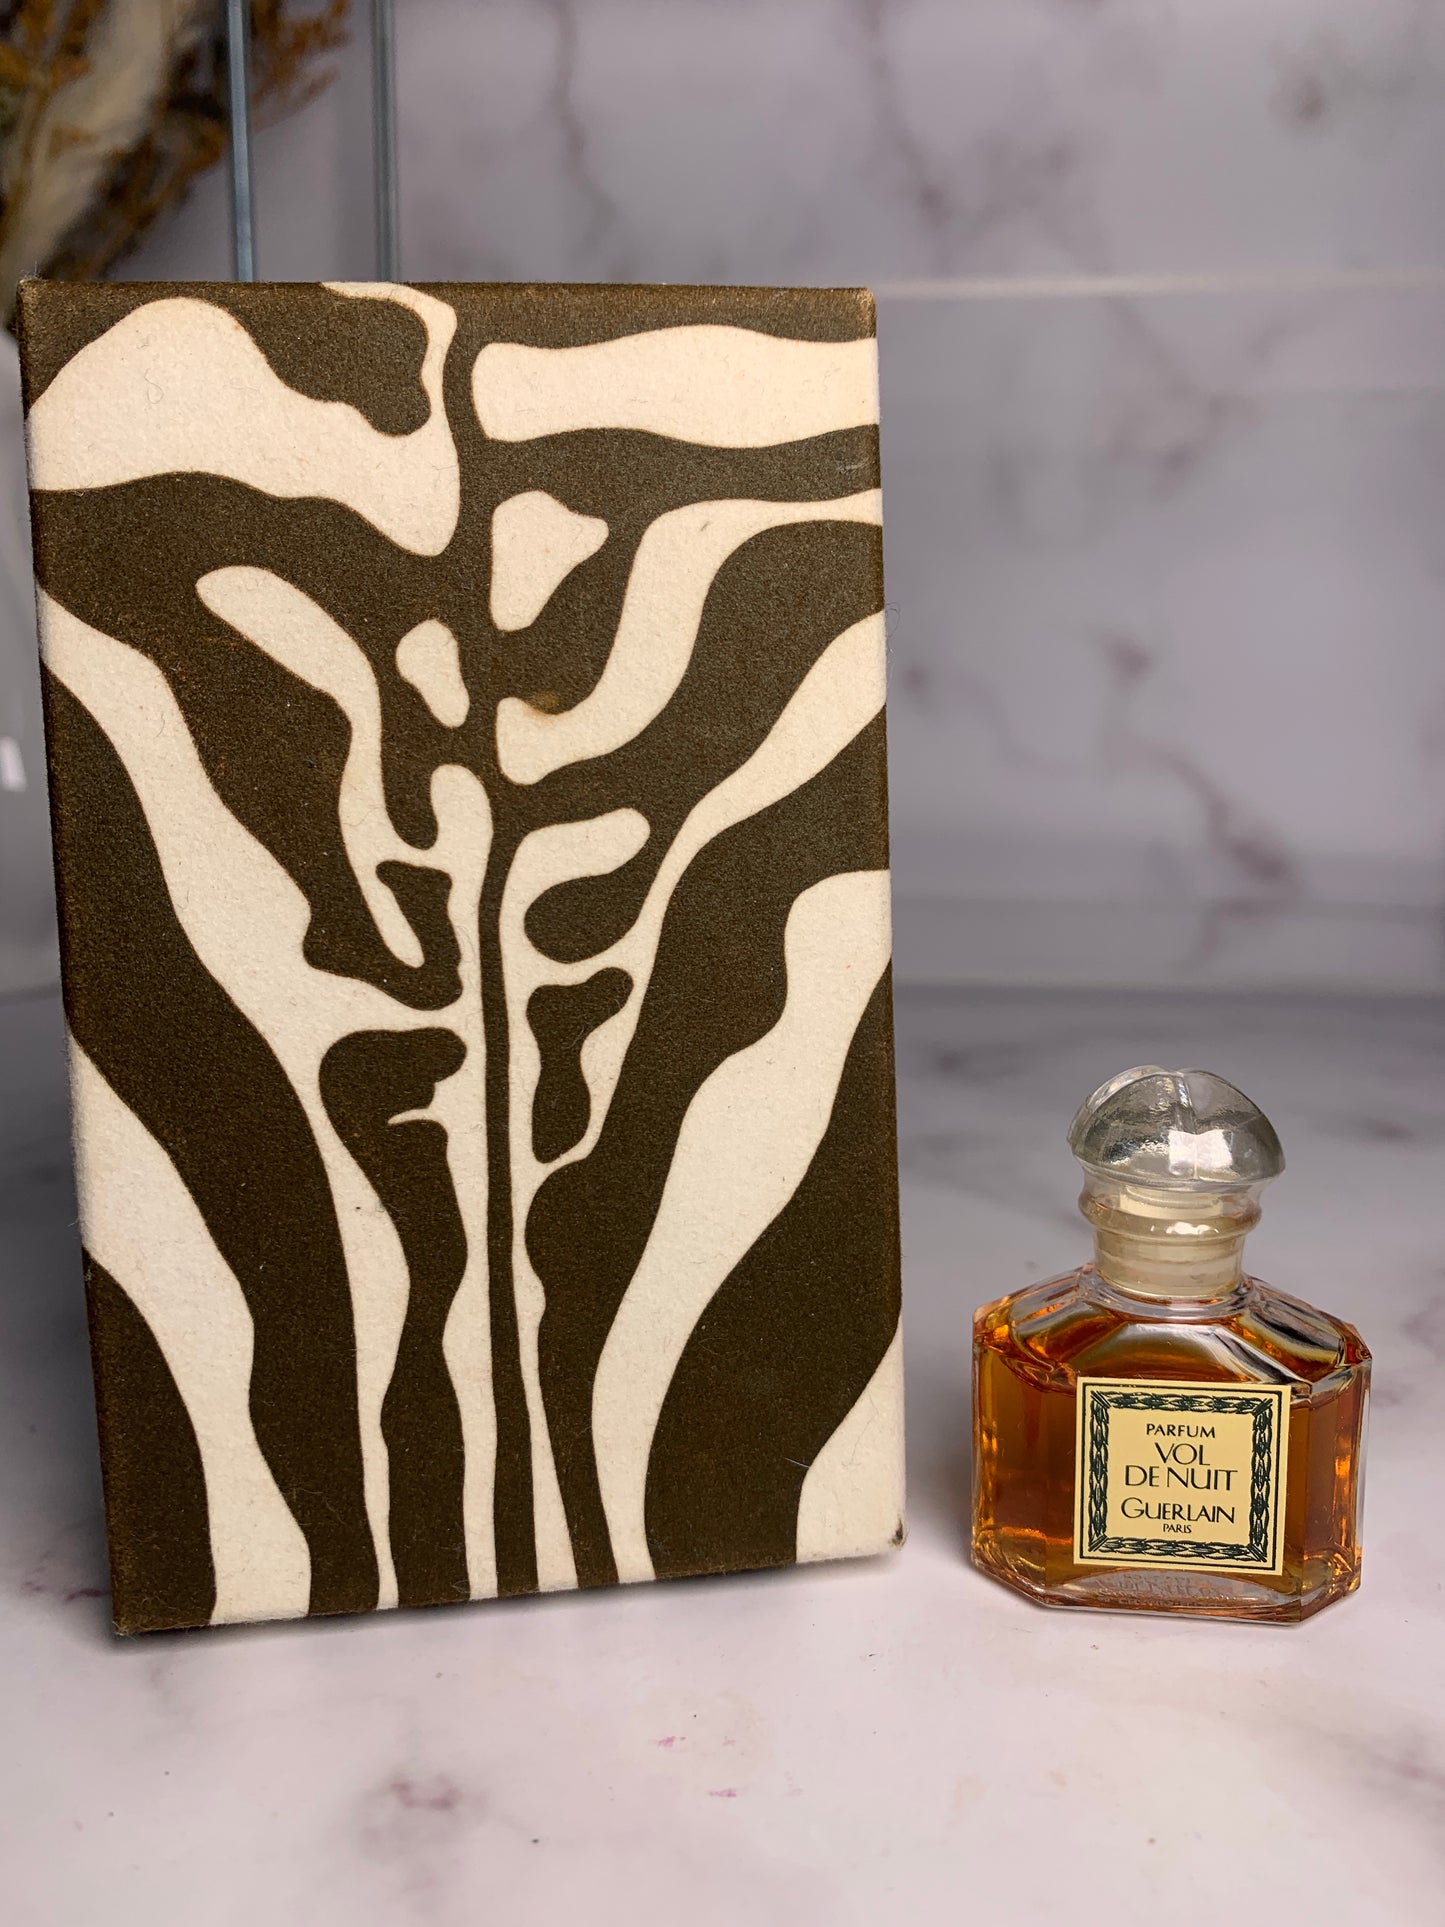 Rare Sealed Guerlain Vol de nuit 7.5ml 1/4 oz Perfume Parfum   - 180723-26